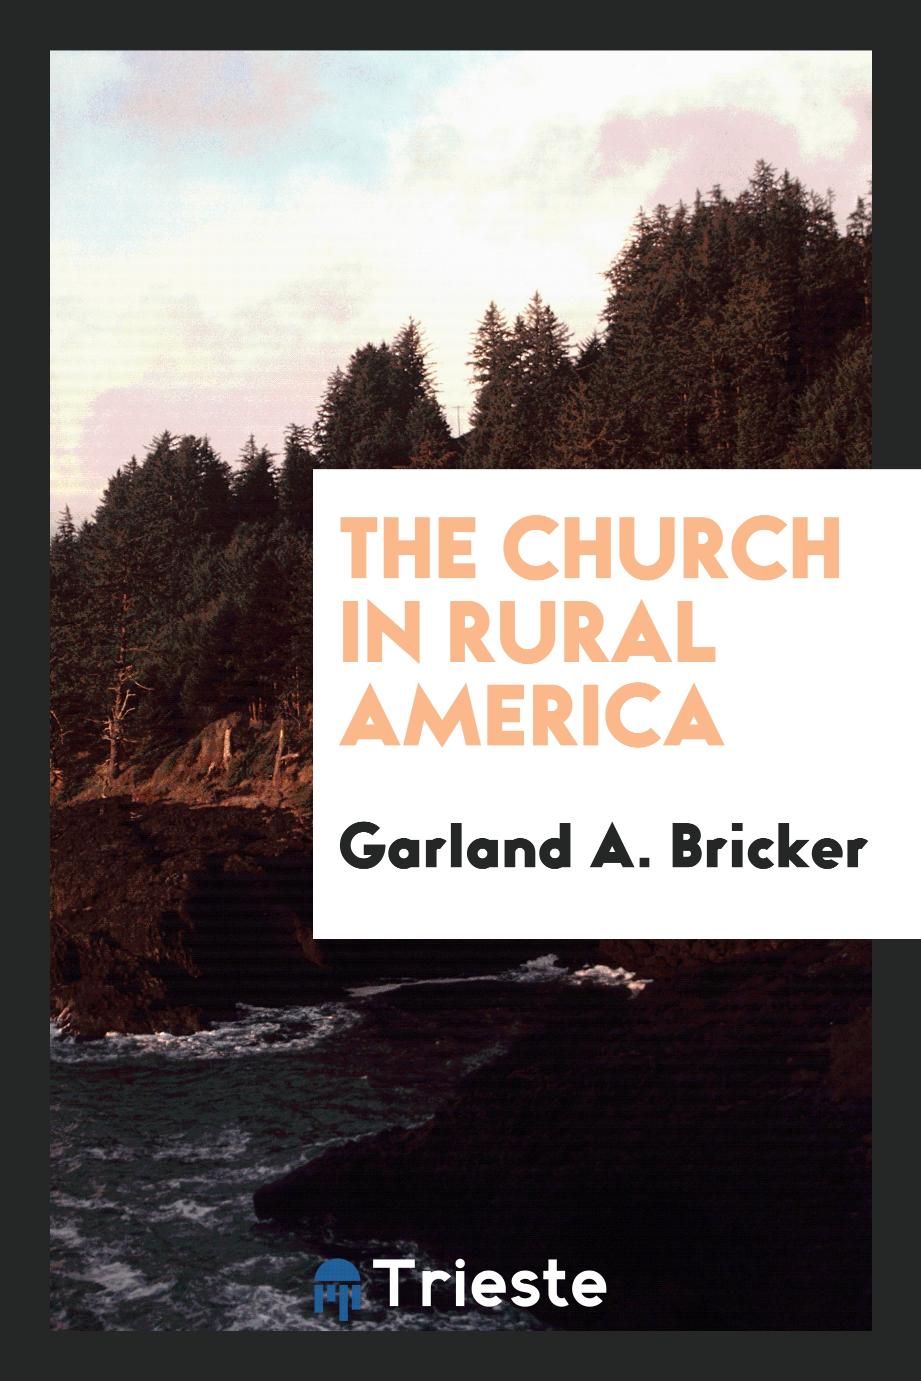 The church in rural America